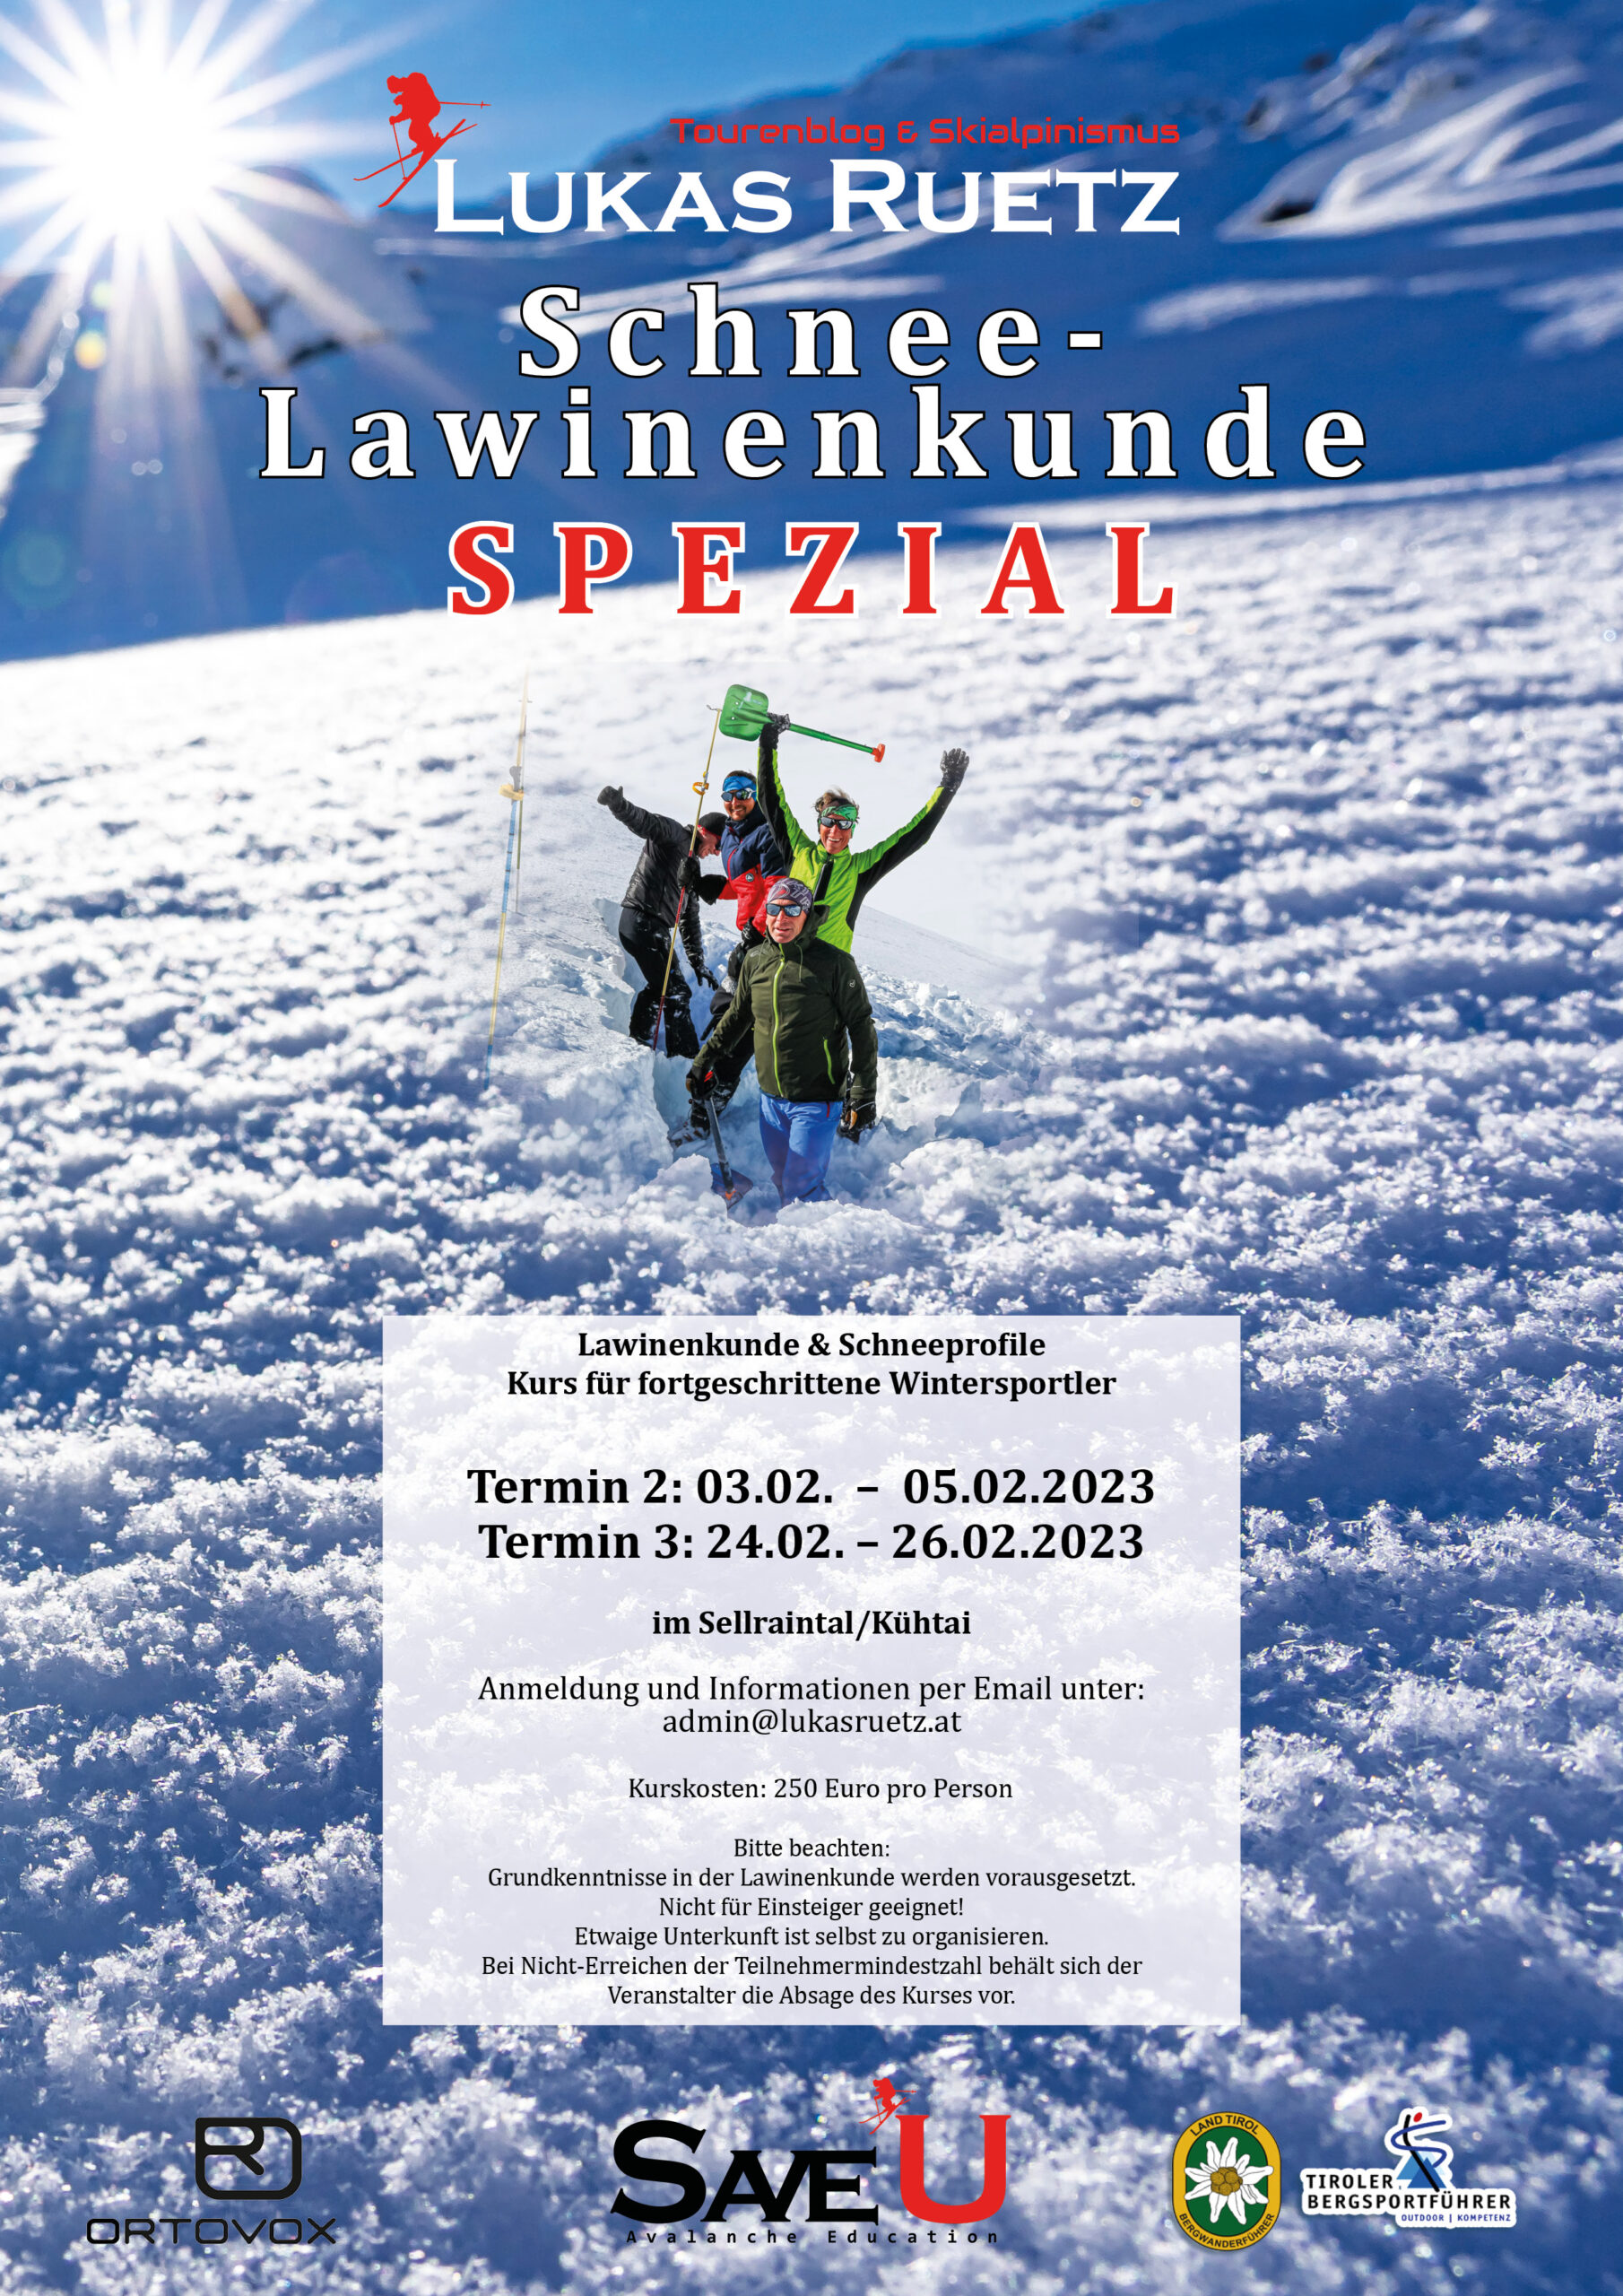 Schnee & Lawinenkunde – Spezialkurs: Termin 2 & 3 | Winter 2022/23